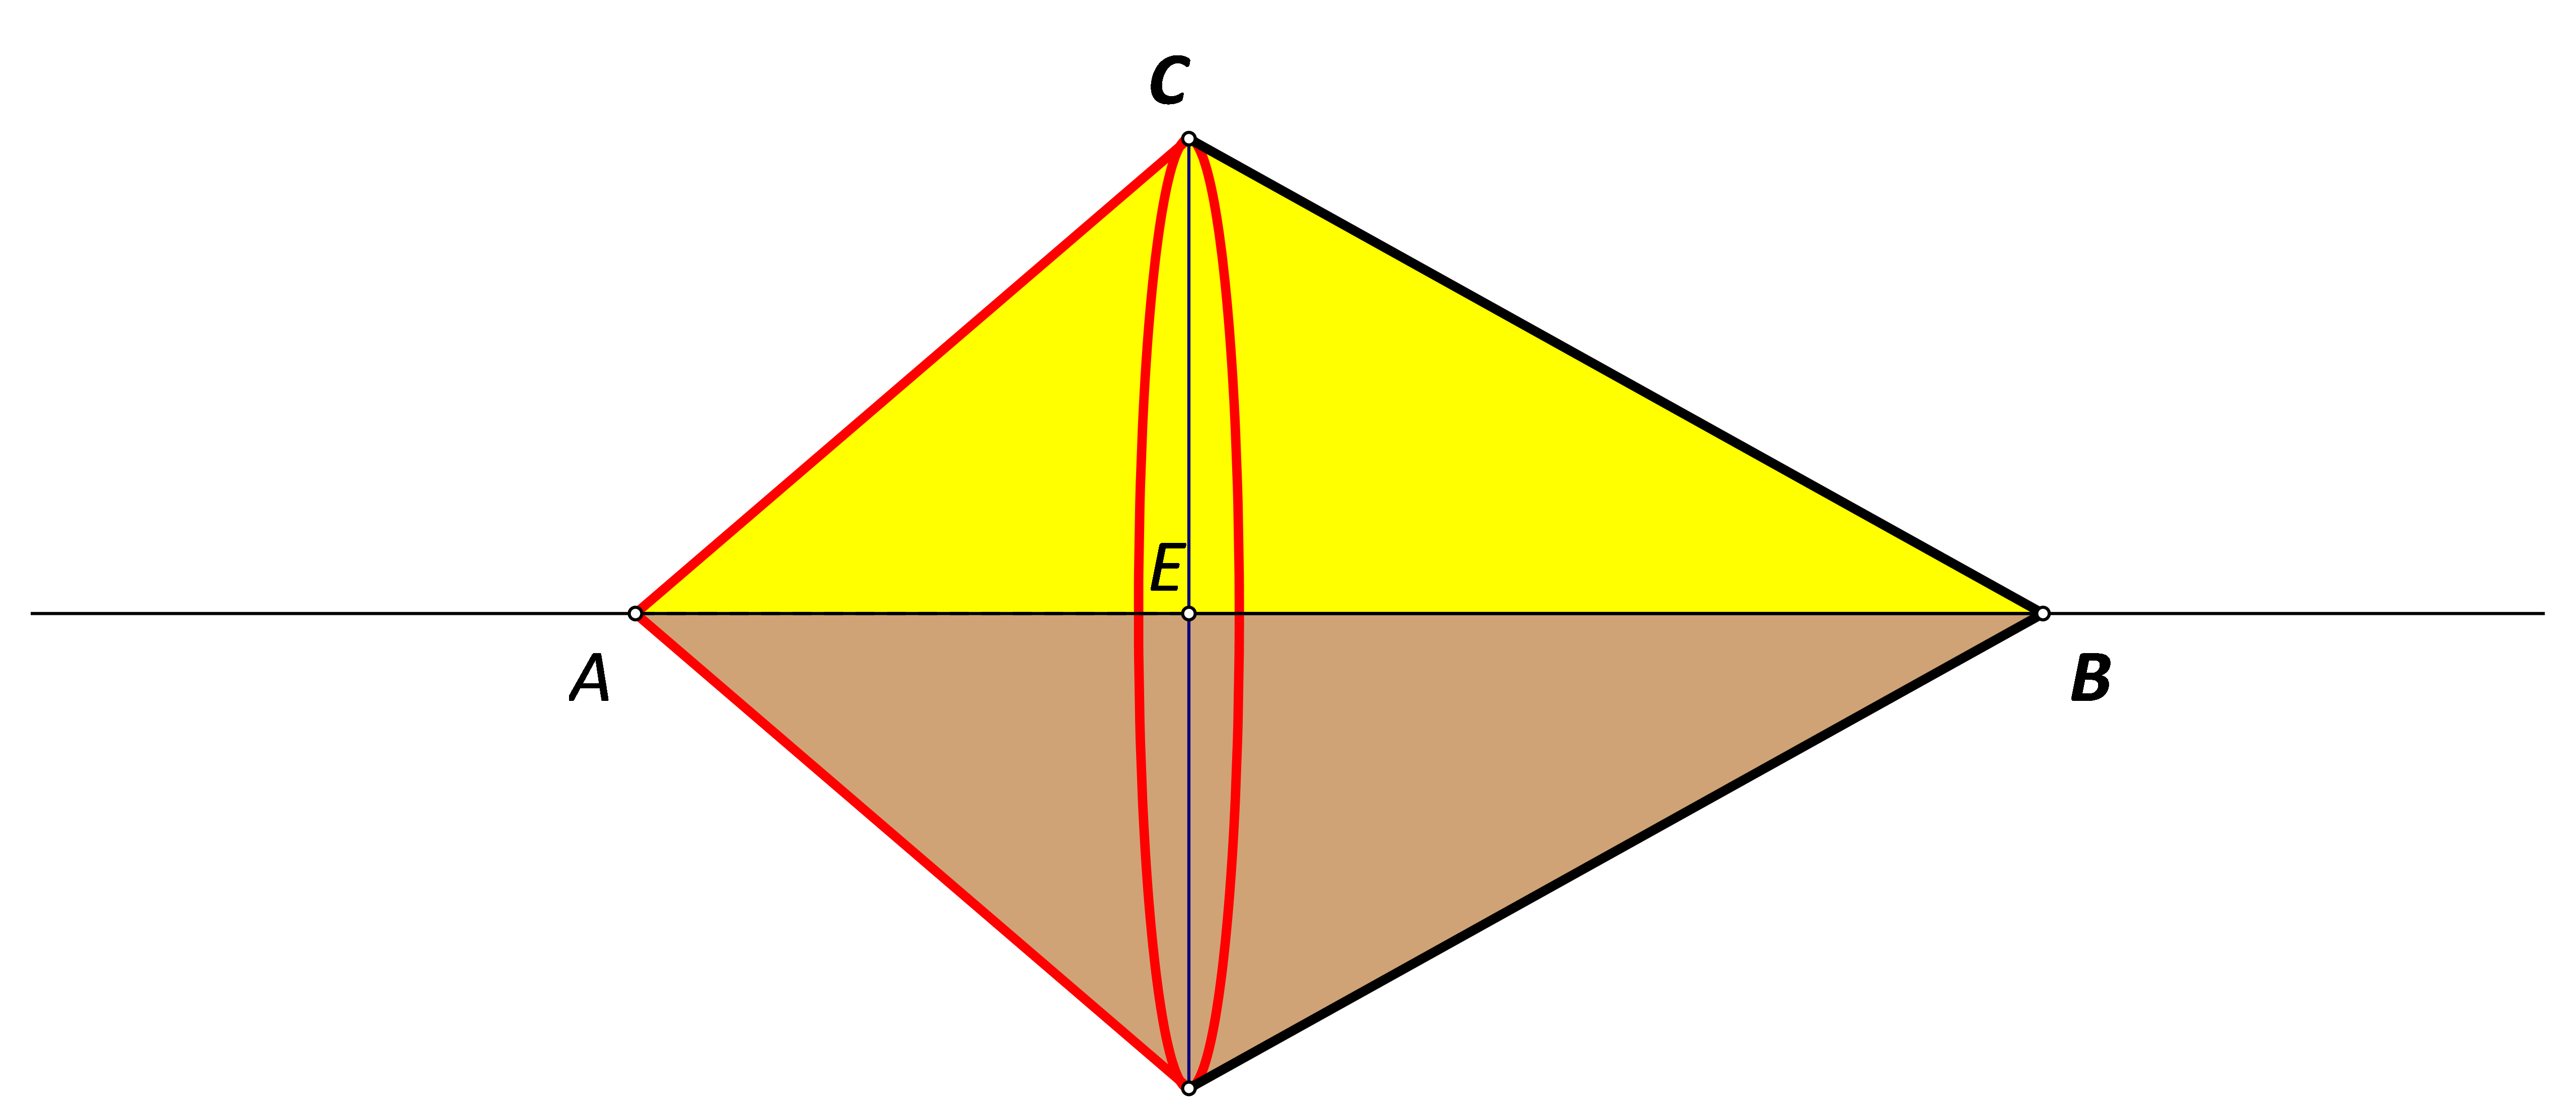 Slika prikazuje dvostruki stožac sa zajedničkom bazom.